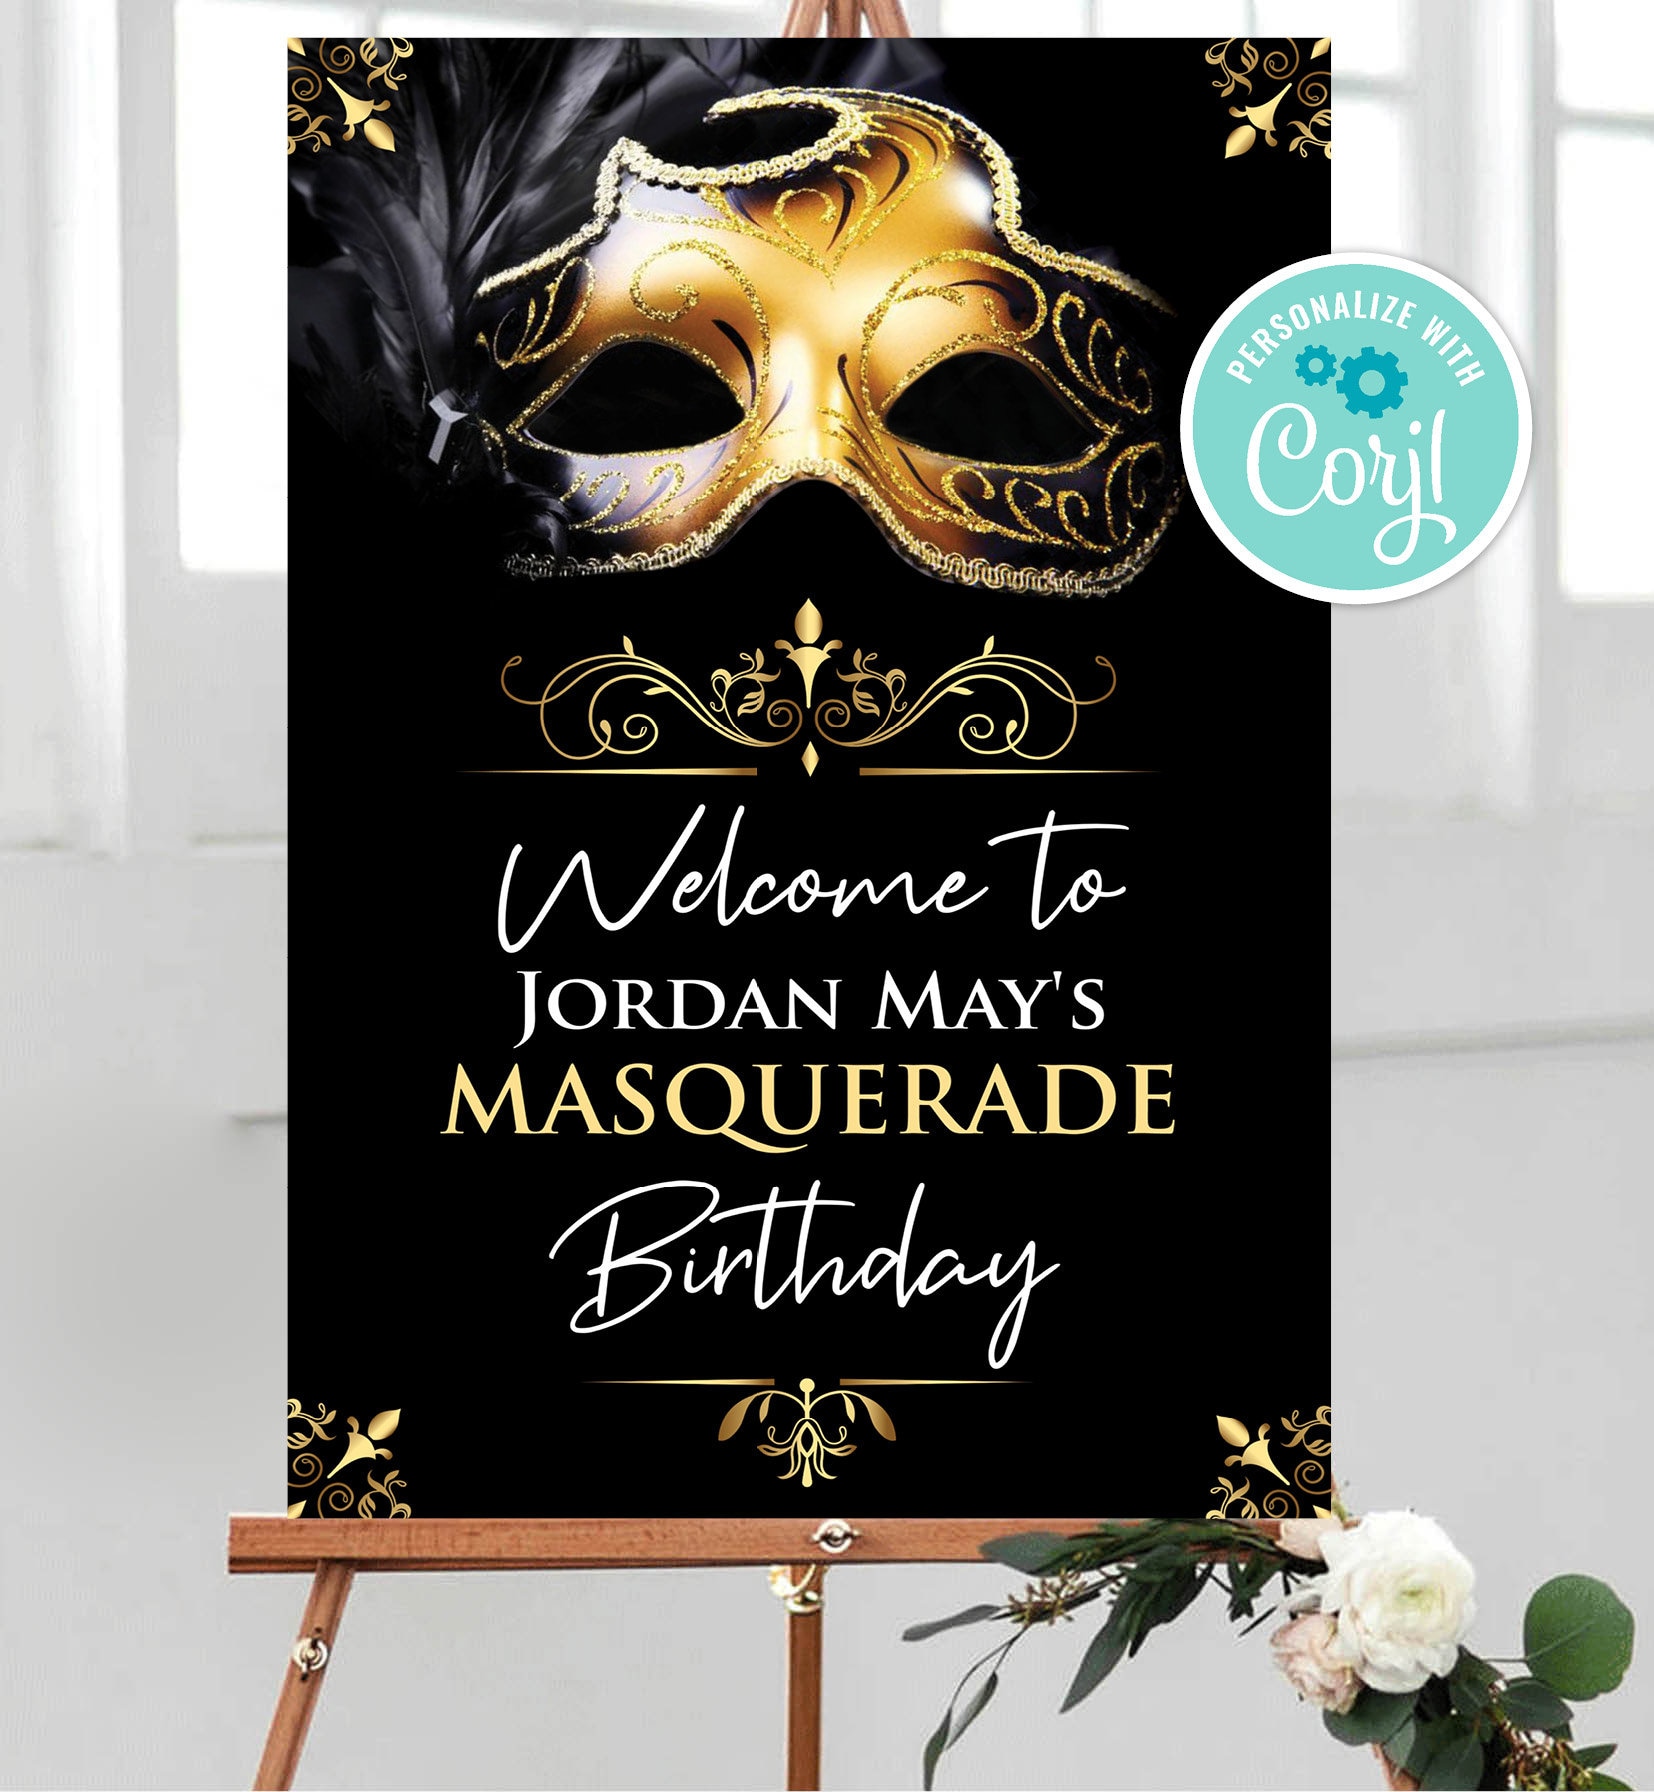 Masquerade Party Welcome Sign,masquerade Birthday Party Welcome Sign, masquerade Prom Welcome Sign,masquerade Party Welcome Sign,prom,ms1 